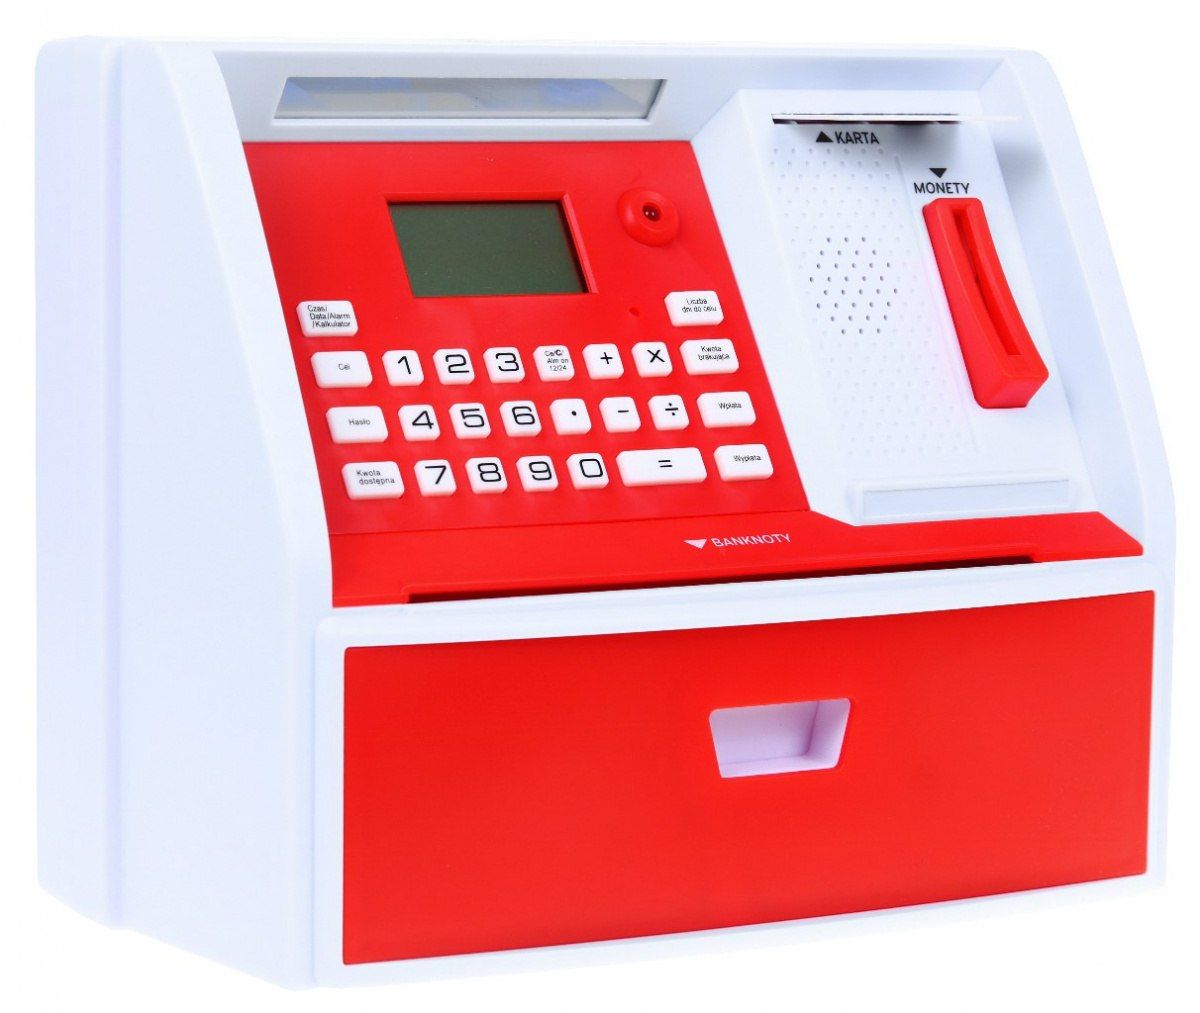 Bankomat skarbonka dla dzieci Interaktywny funkcje + Karta bankomatowa